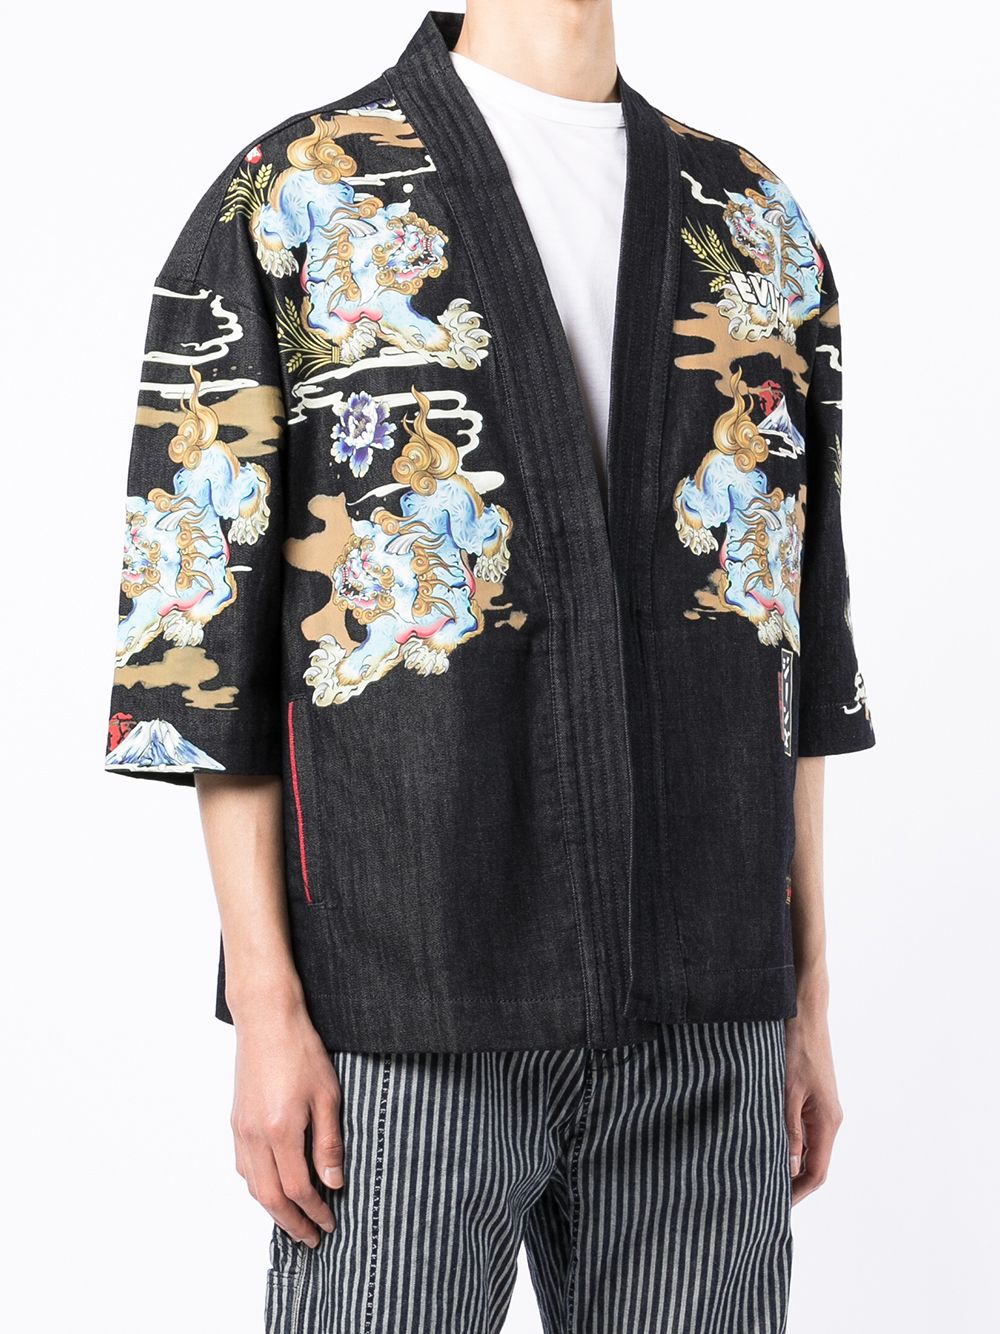 EVISU Komainu All Over Printed Denim Kimono - MAISONDEFASHION.COM